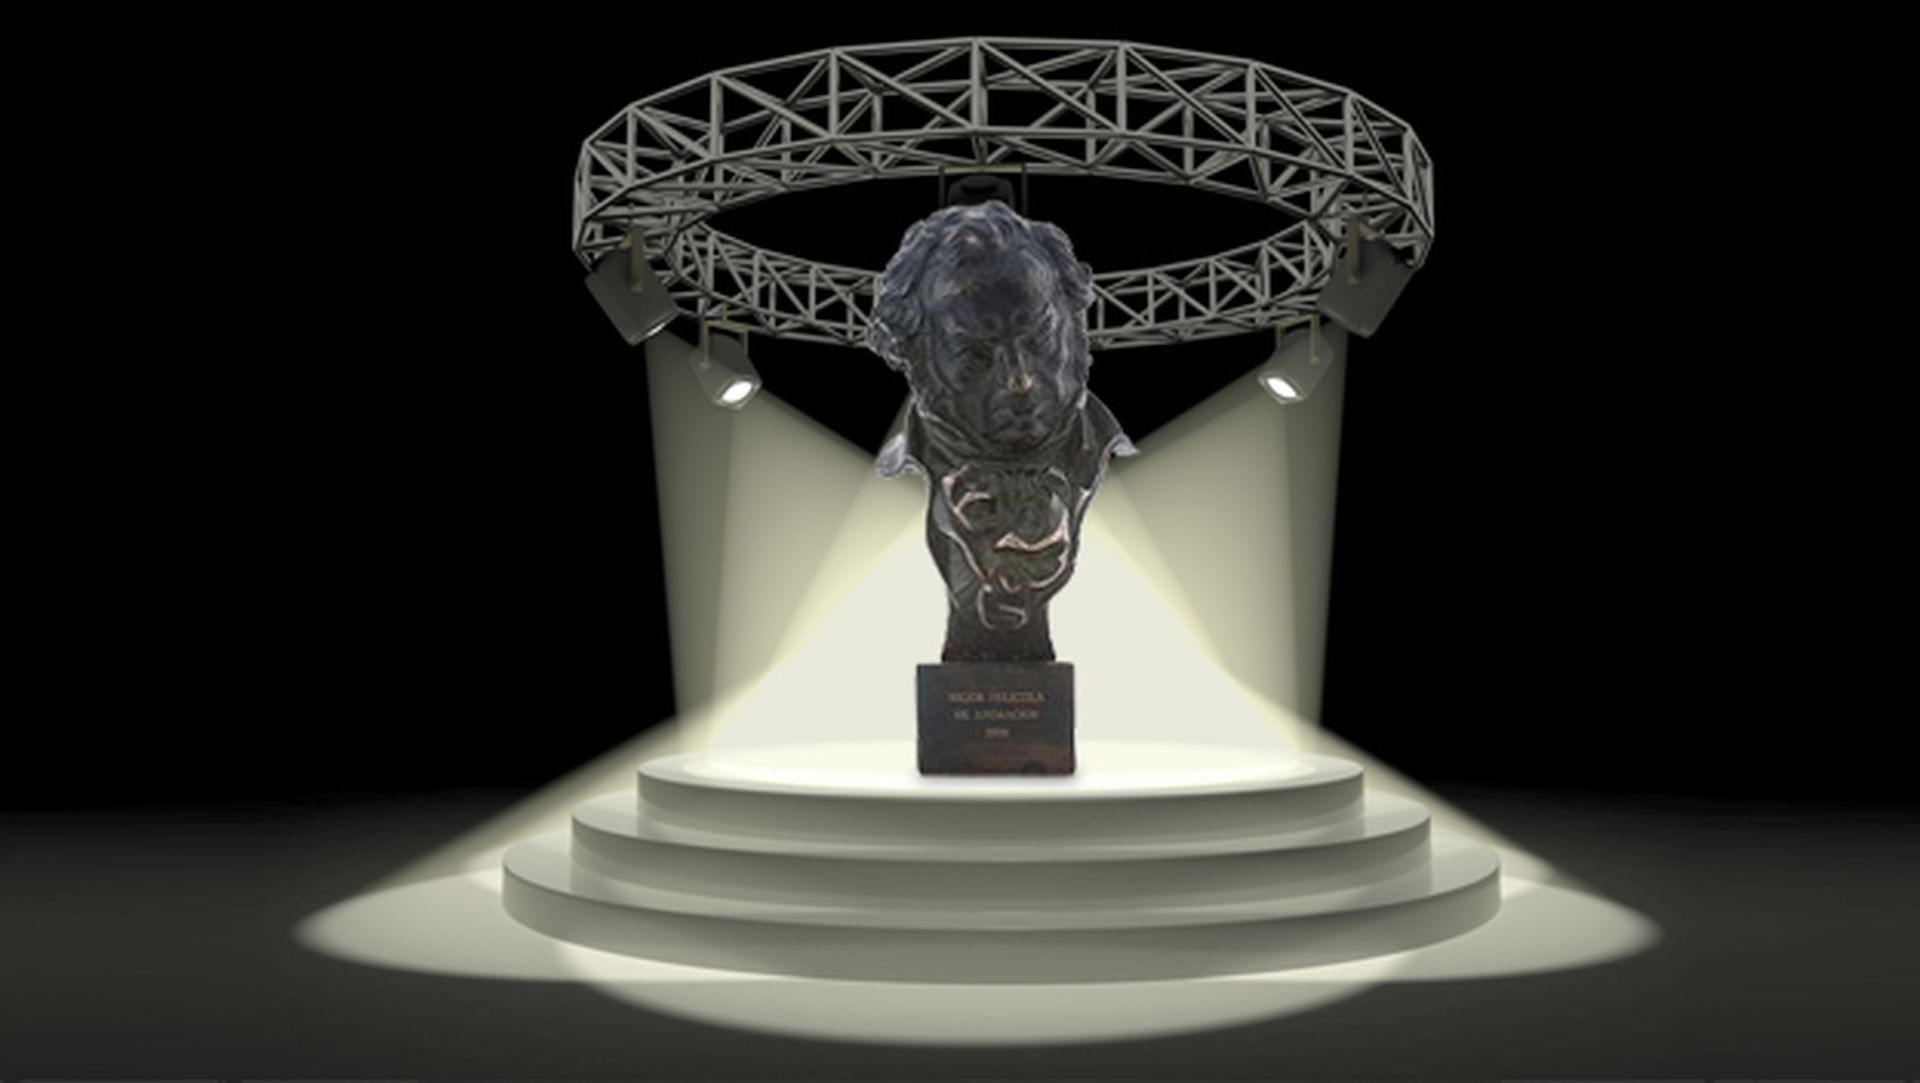 Ganadores Premios Goya 2015